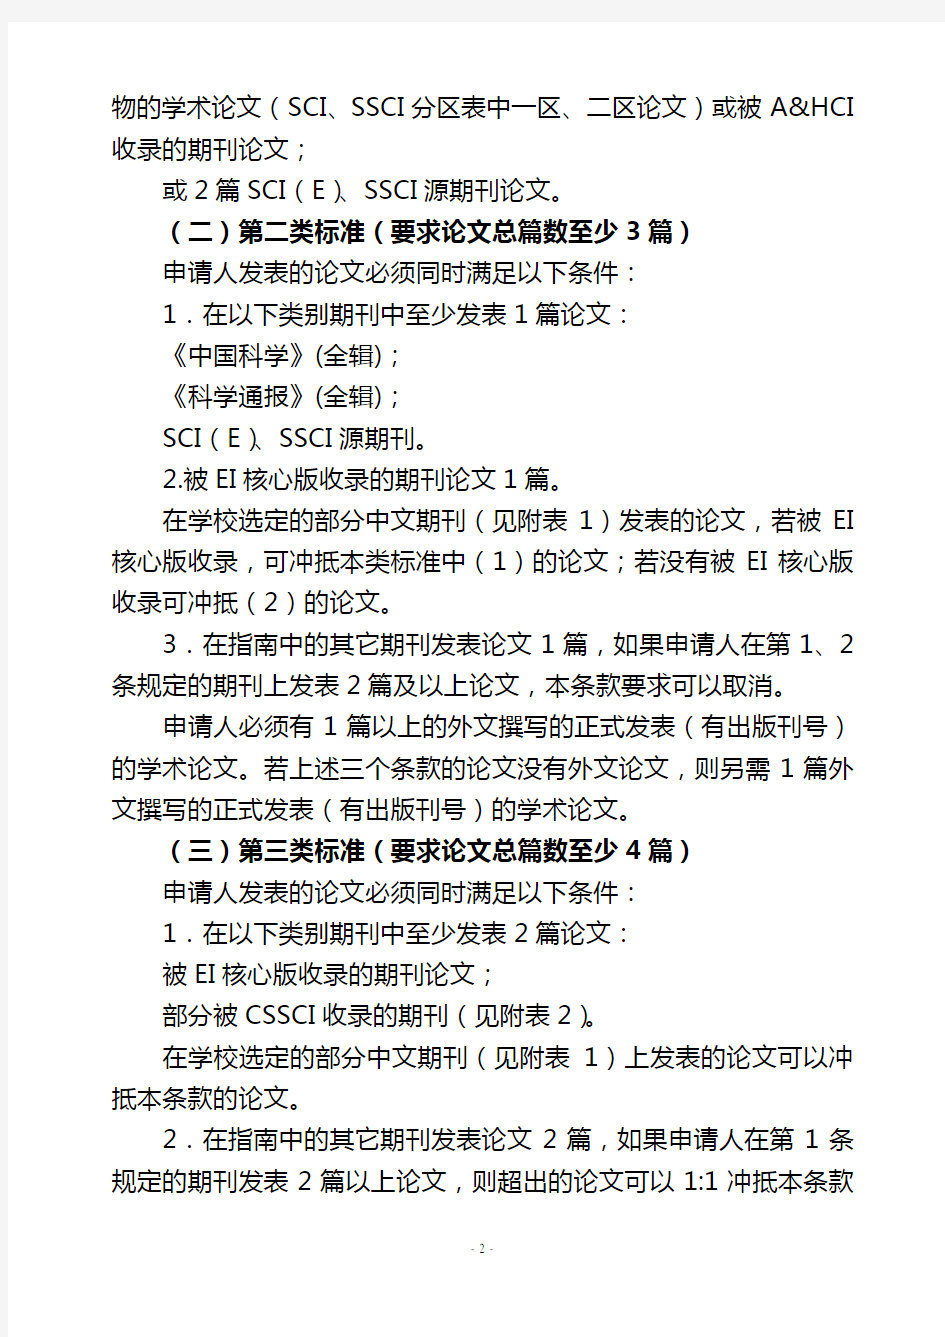 (20140521)南京理工大学关于博士研究生发表学术论文要求的规定(2014年修订)